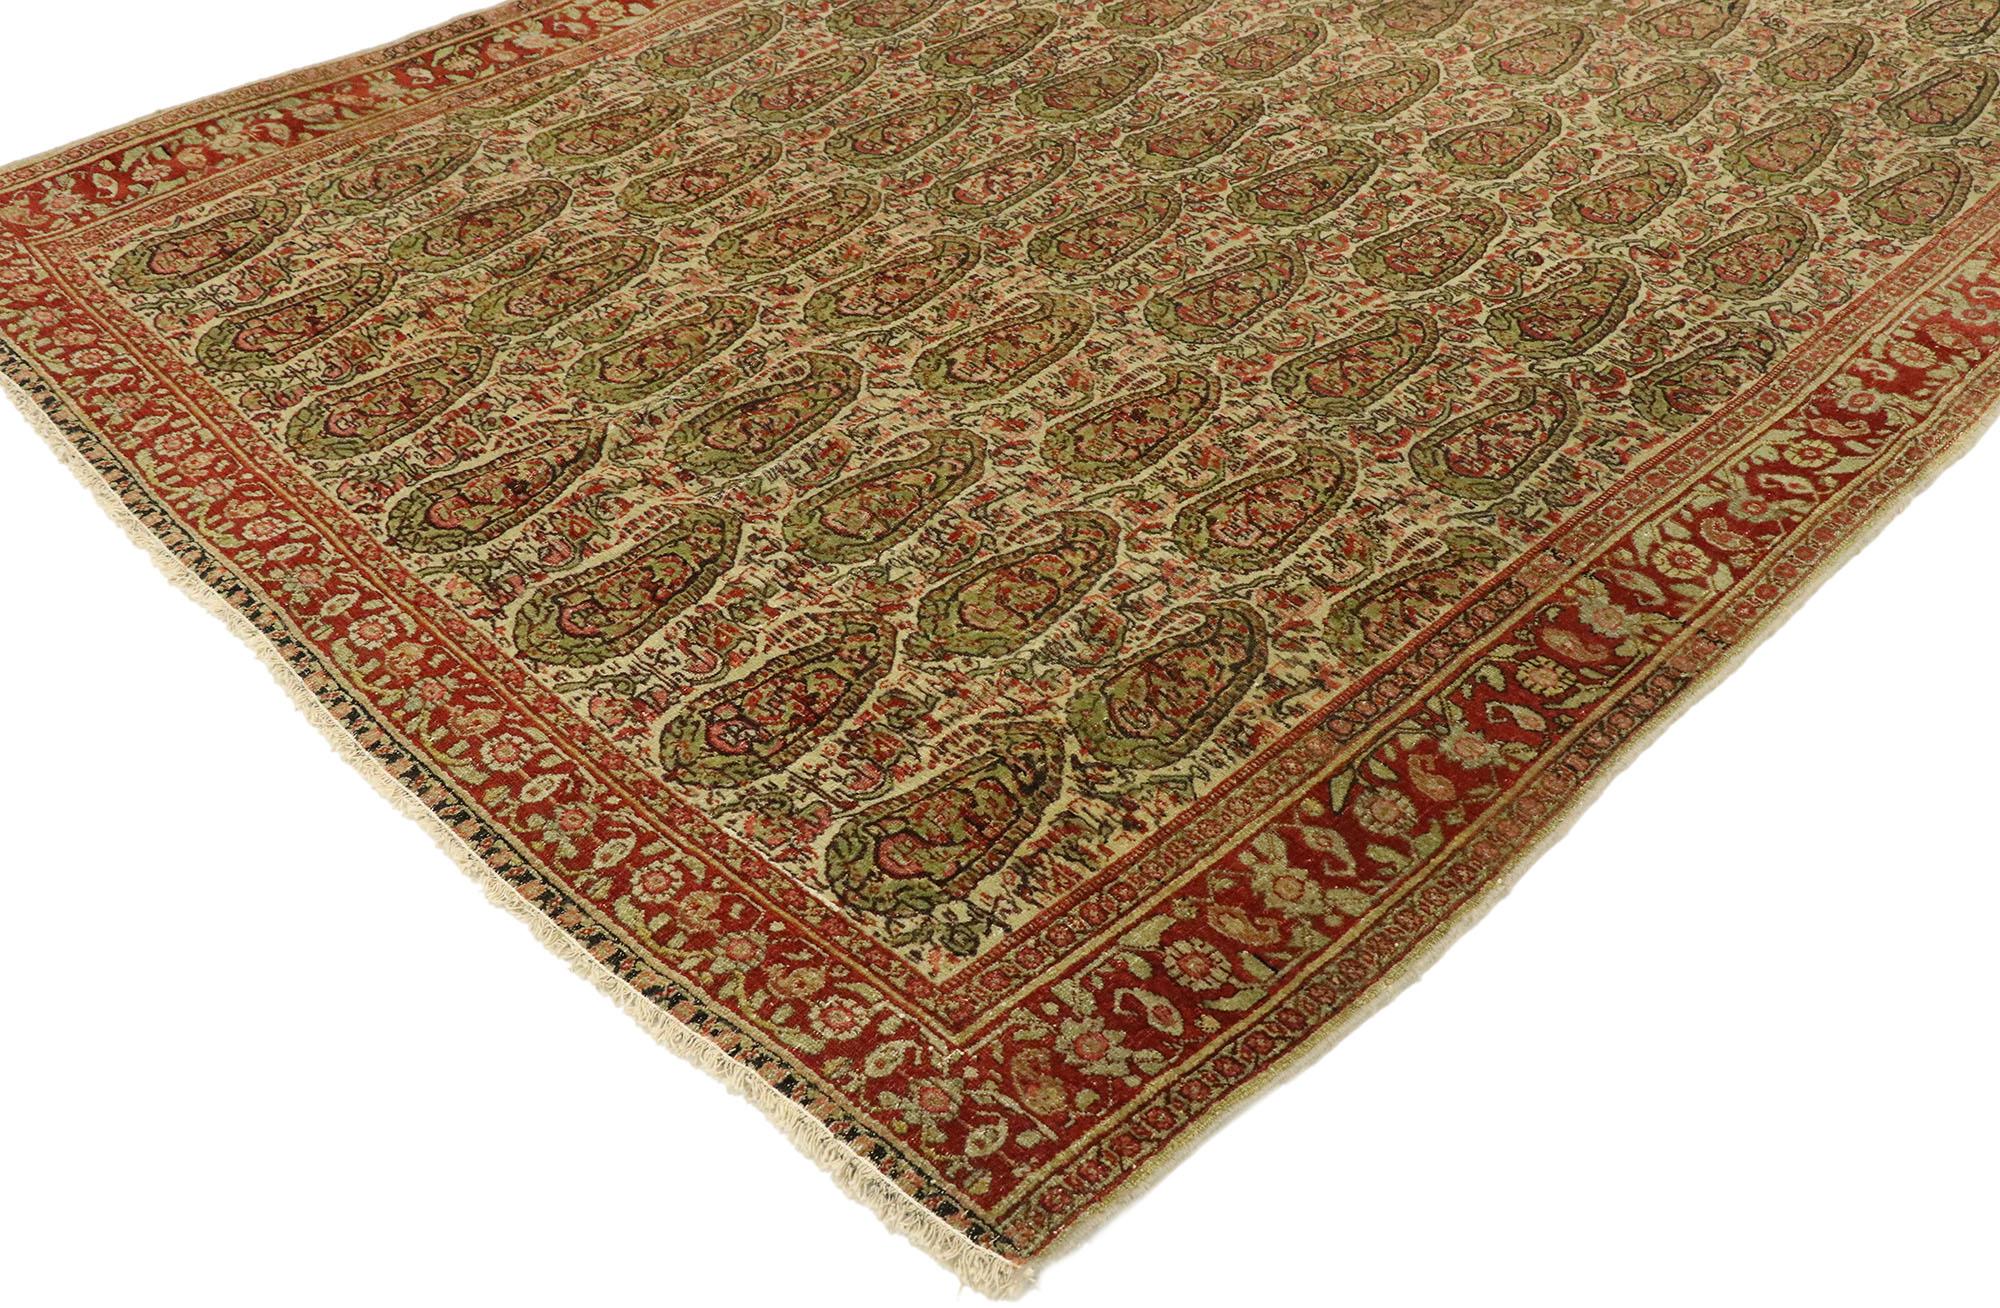 tapis Persan Senneh vintage 53088 avec un style Arts & Crafts rustique. Avec son charme rustique et son attrait intemporel dans une gamme de couleurs inspirées de la terre, ce Senneh persan vintage en laine nouée à la main peut magnifiquement